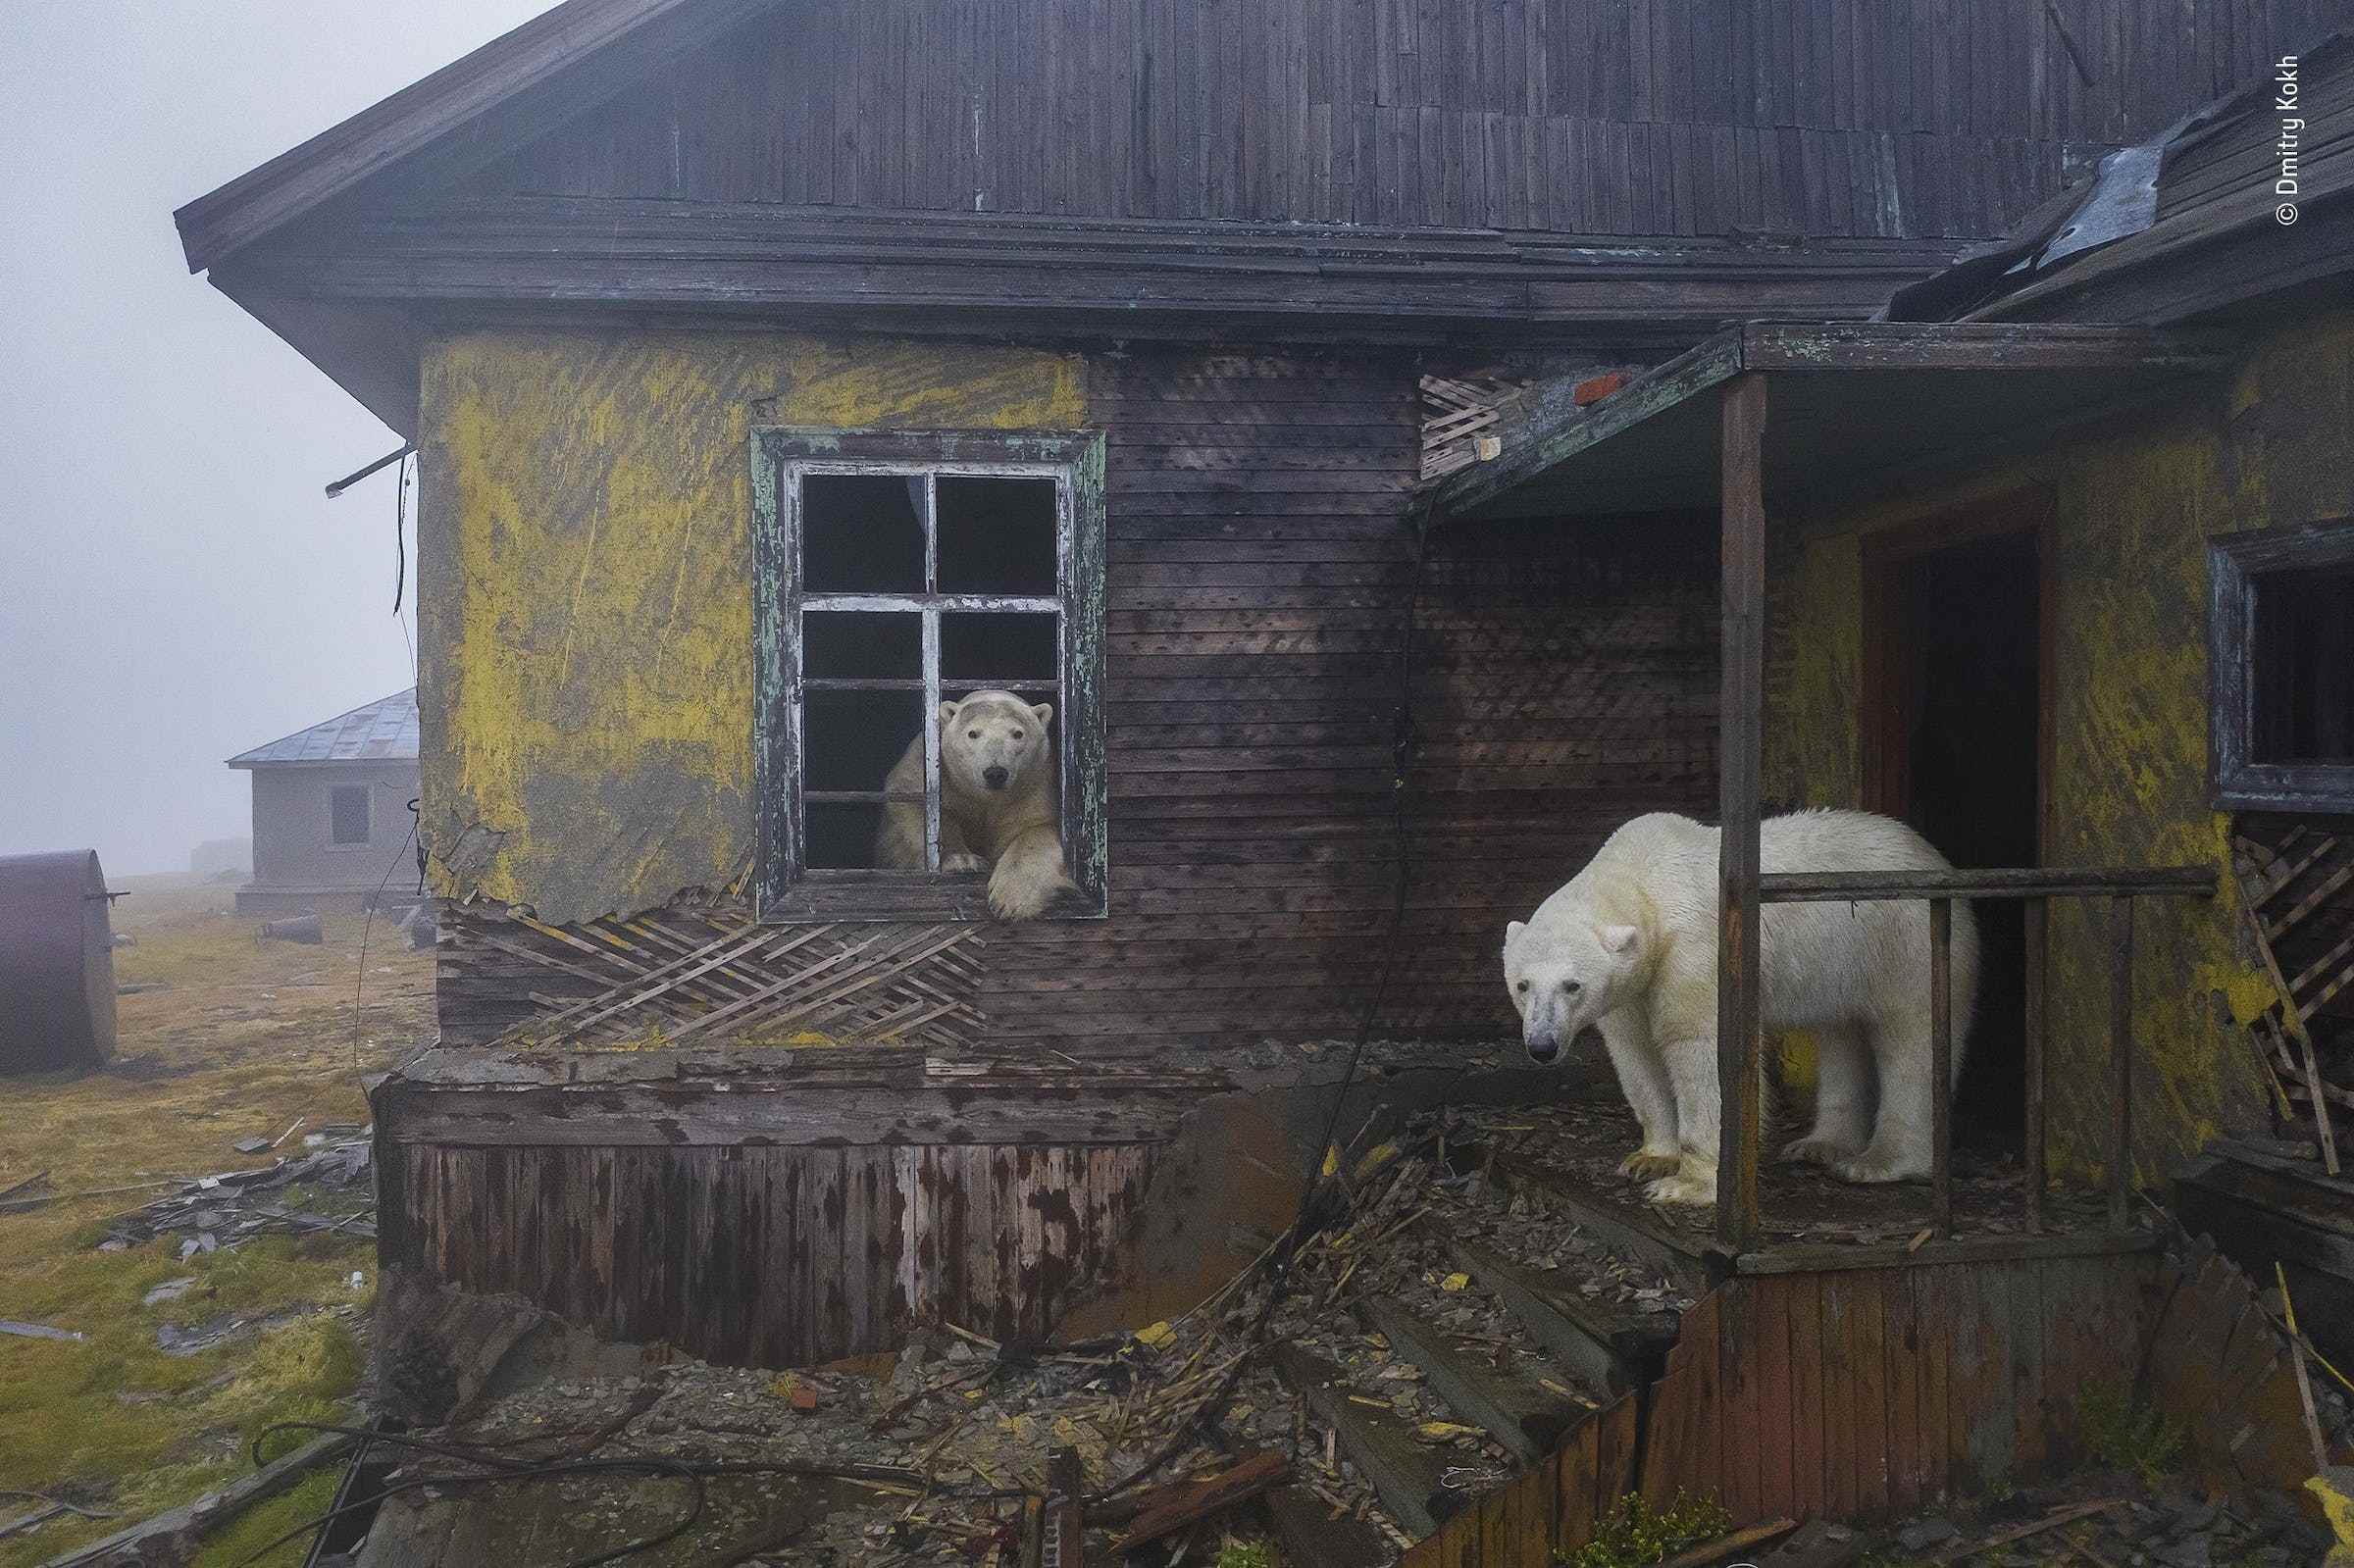 Sisle kaplanmış bir evde iki kutup ayısı.  Biri ön verandada duruyor, diğeri ise pencerenin dışına bakıyor.